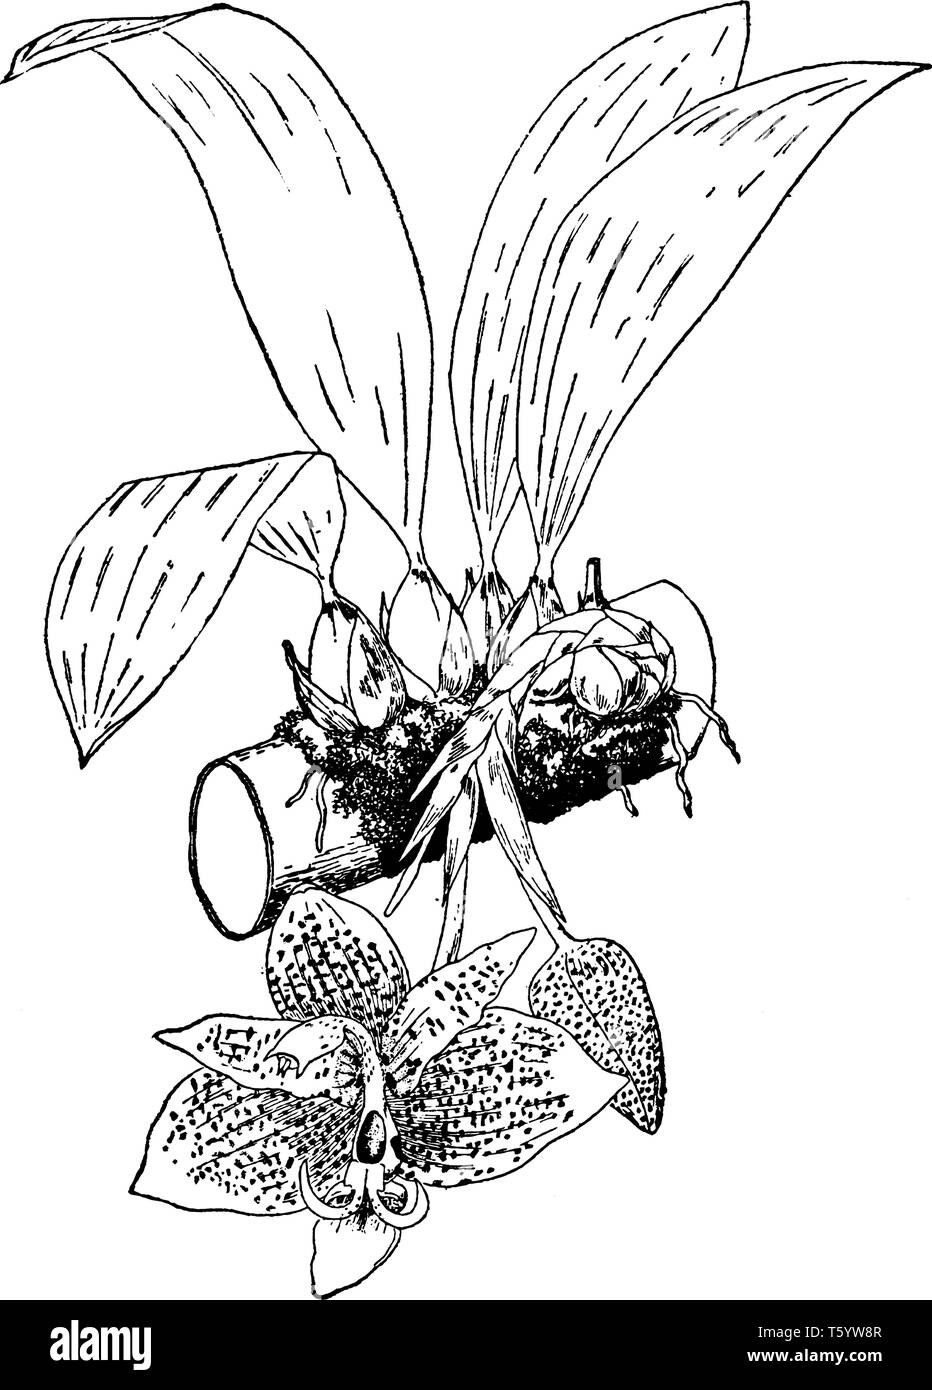 Stanhopea oculata ist eine Pflanzenart aus der Gattung der Orchideen, die in der Regel in den südöstlichen Teilen von Brasilien gesehen. Die Blüten sind moderate Größe, Breite, und es gibt viele f Stock Vektor